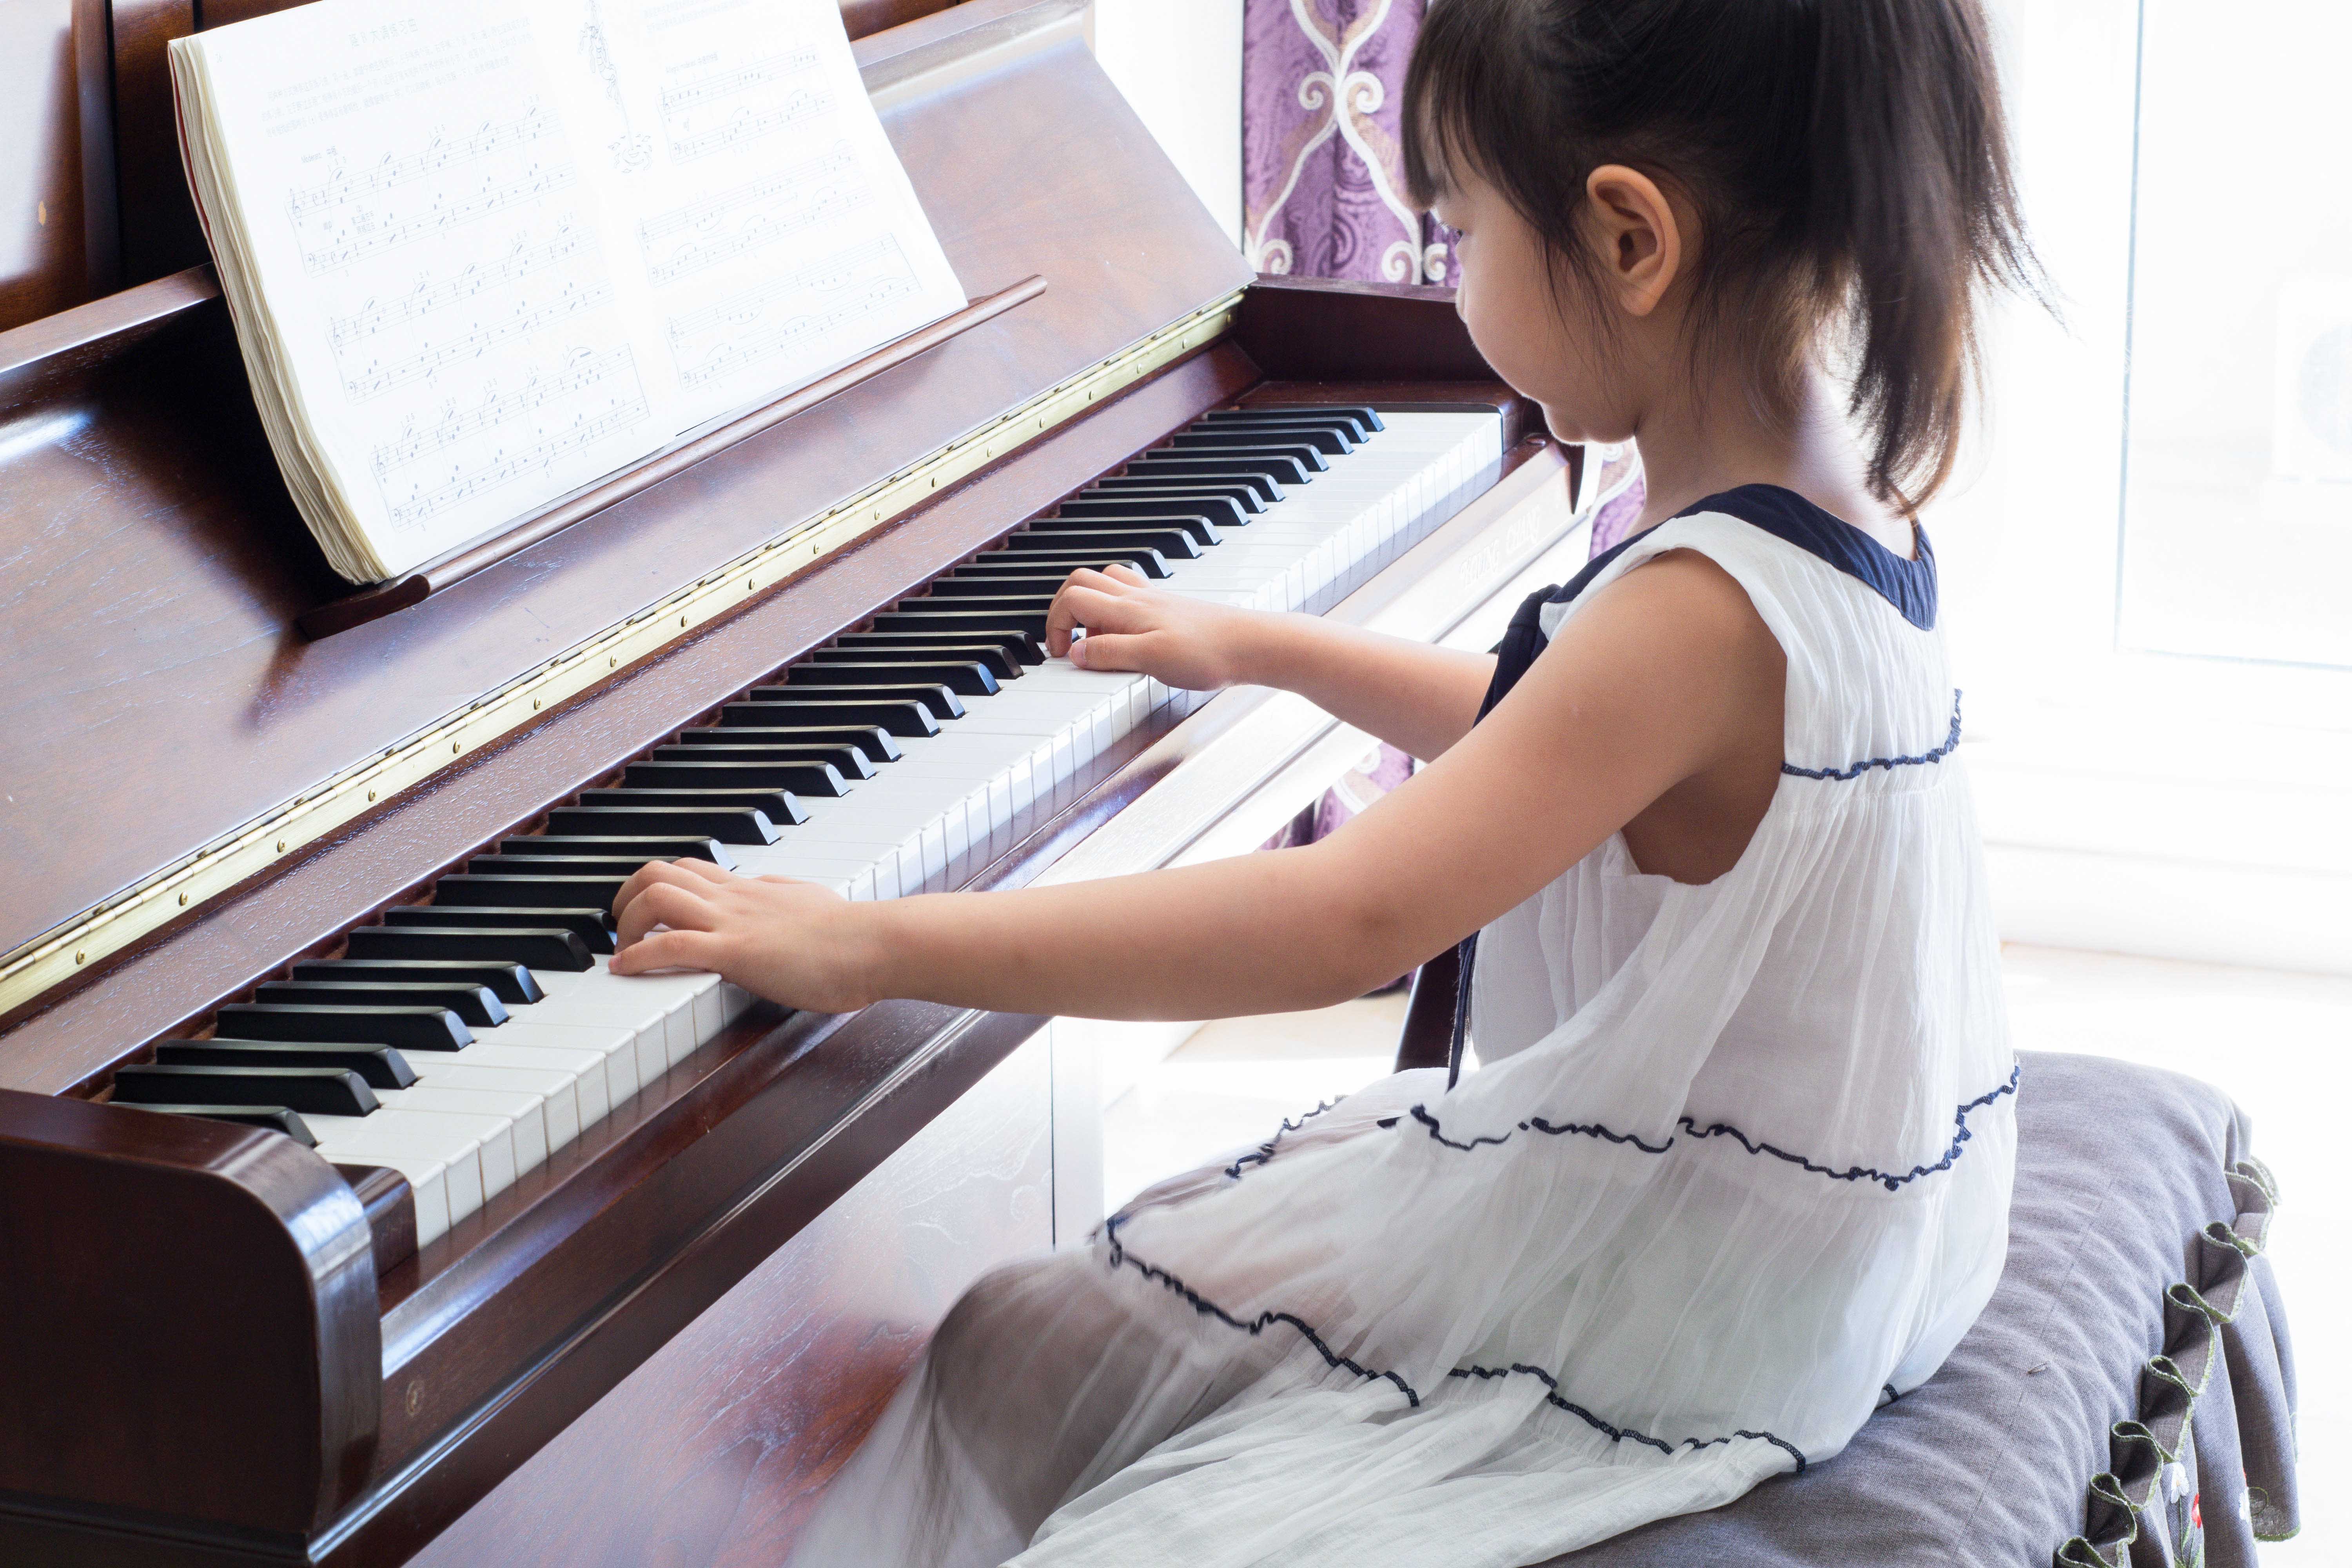 少儿钢琴培训|少儿、成人钢琴培训-苏州悦音文化传媒有限公司